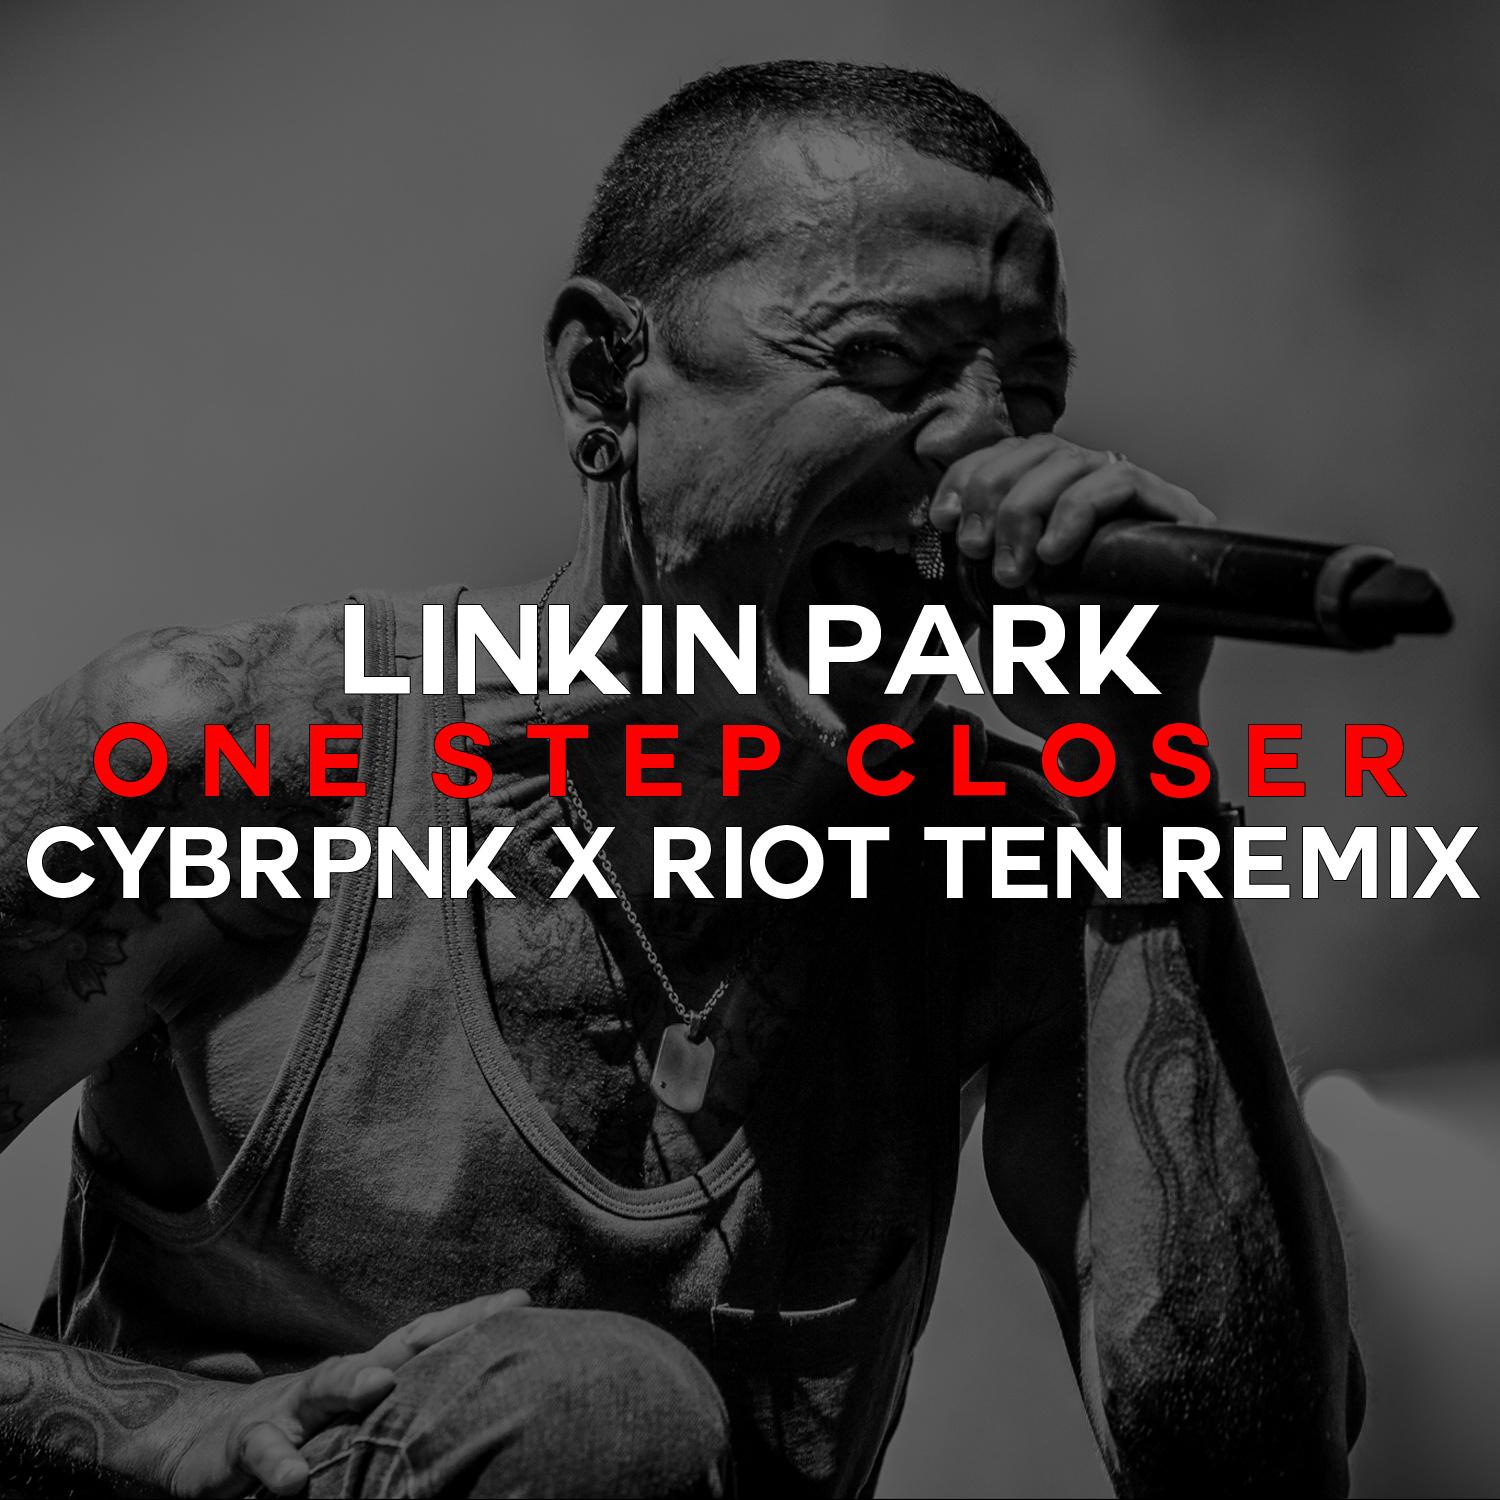 CYBRPNK - One Step Closer (CYBRPNK x Riot Ten Remix)